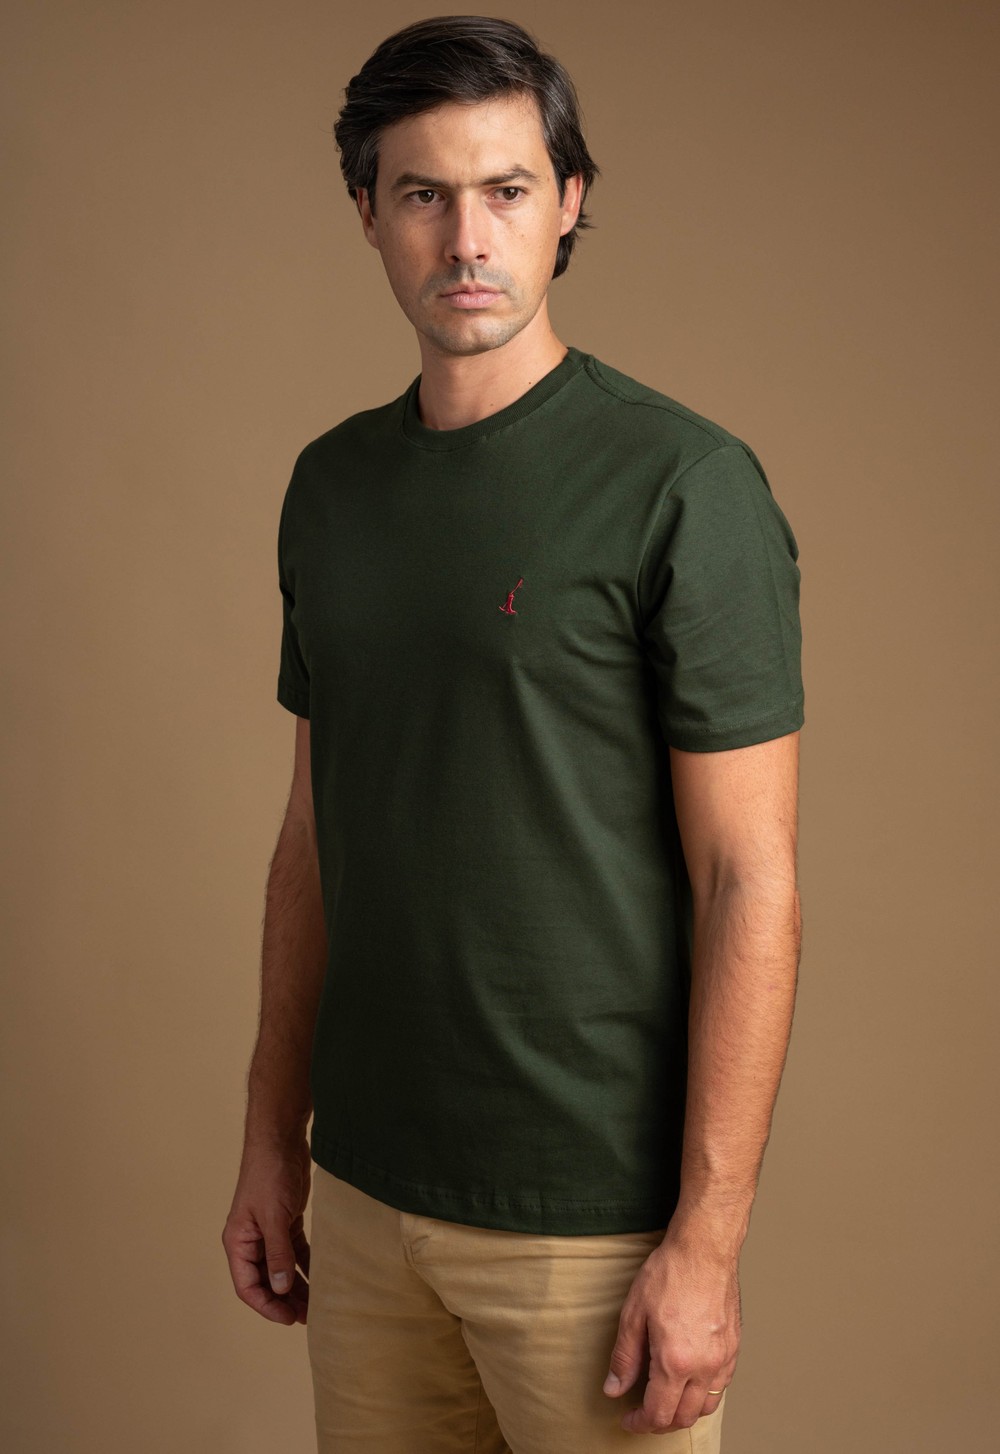 Camiseta Masculina Lisa 02530 Verde Camuflagem